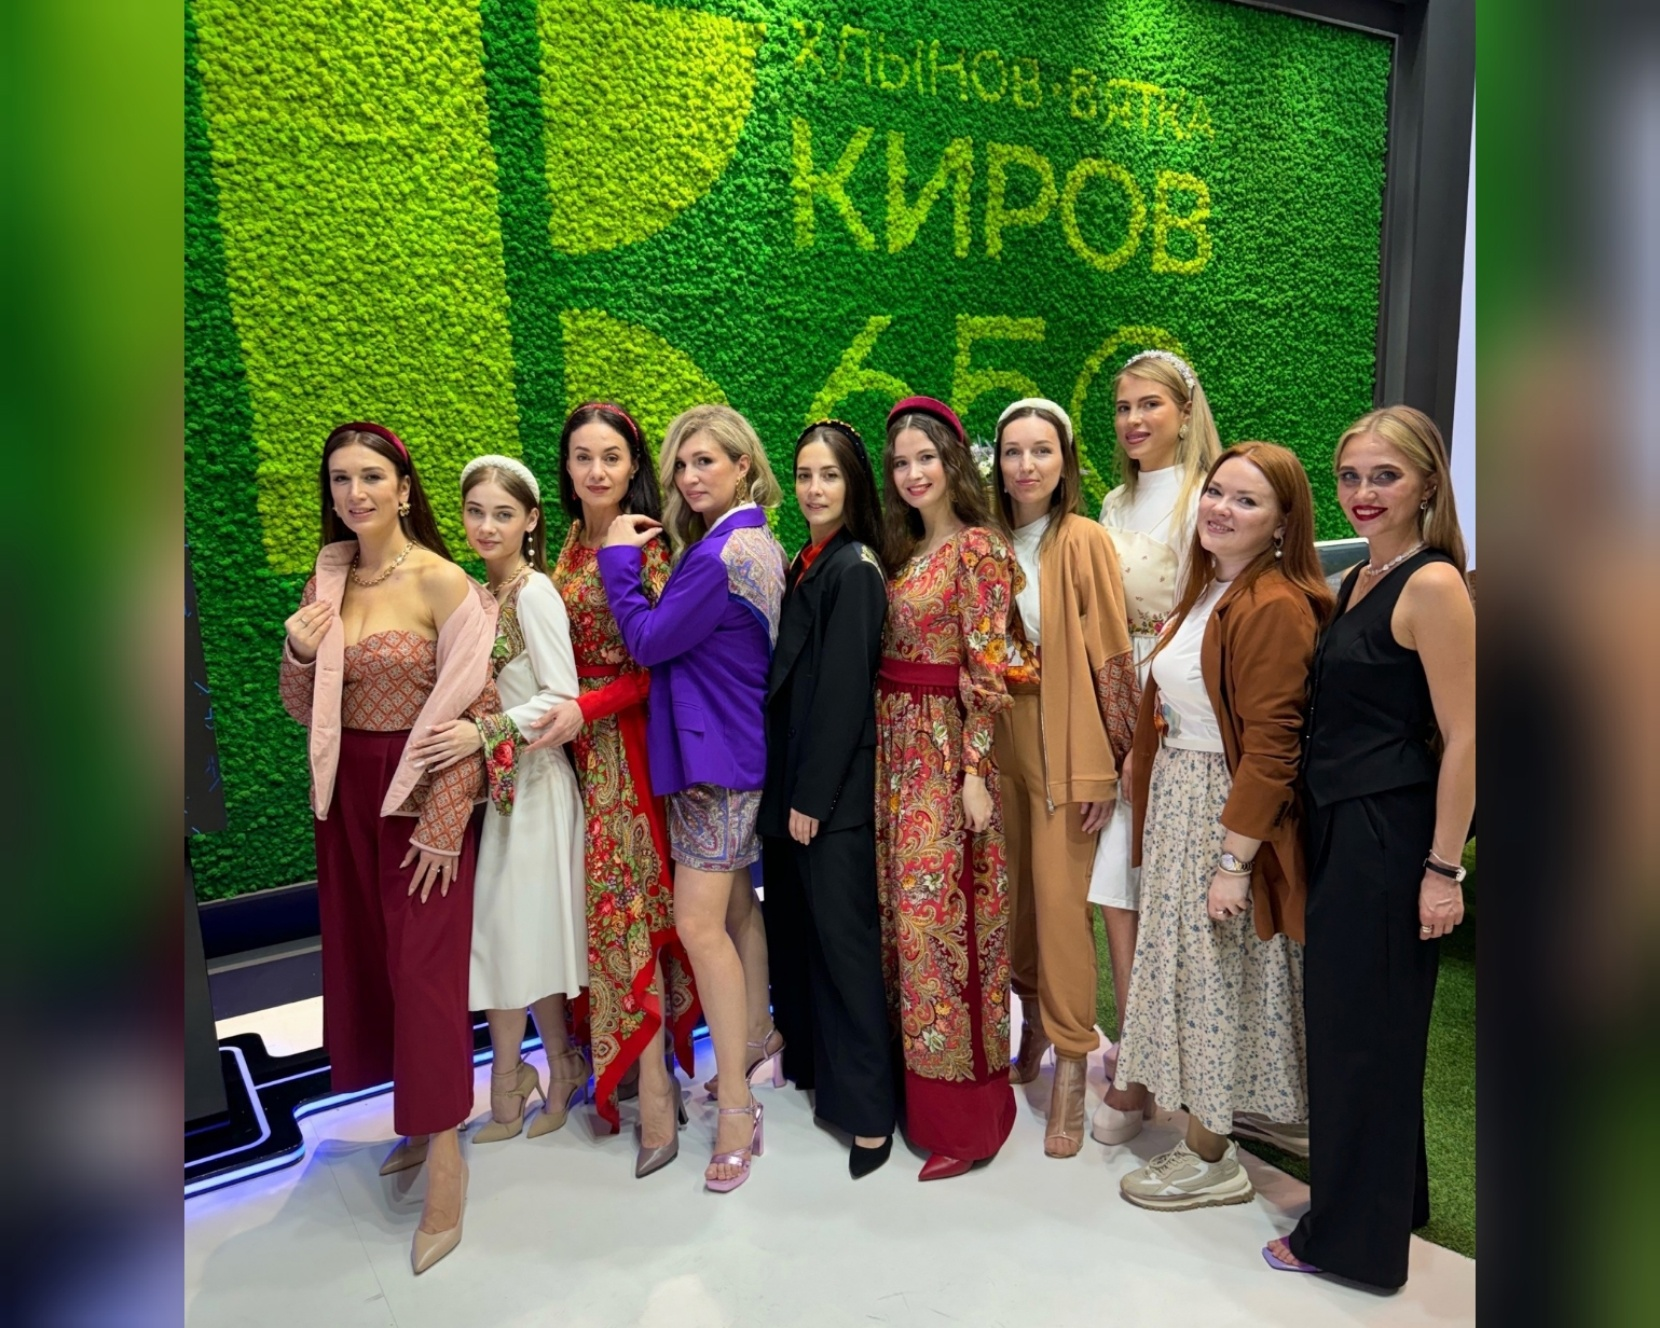 Показ коллекции под оперное выступление: как кирово-чепецкие дизайнеры представили одежду в Москве